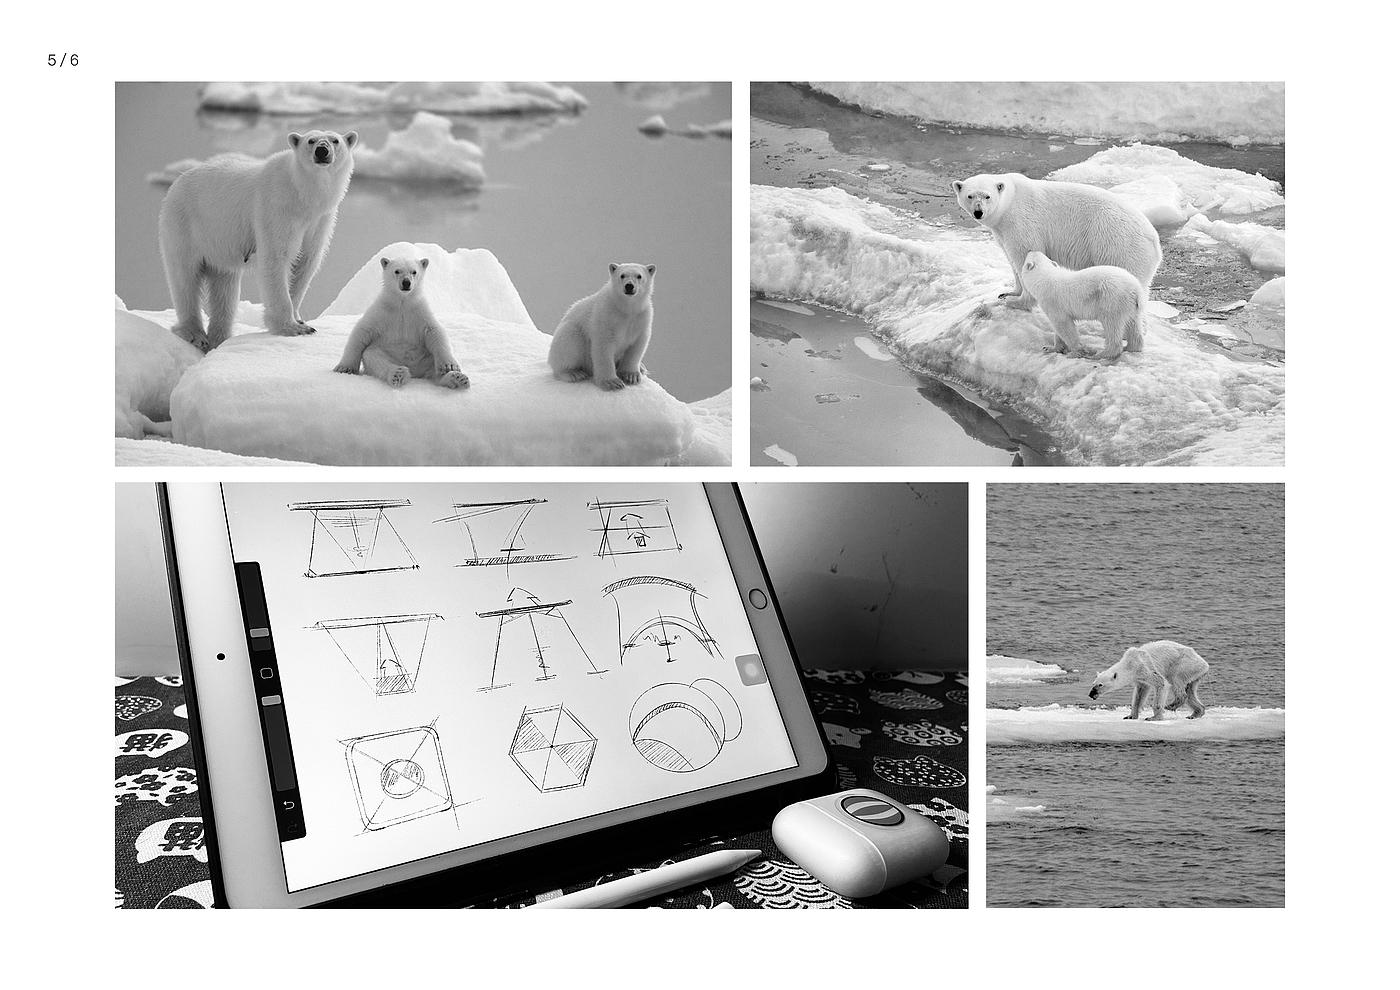 北极熊，冰面，环保，环境问题，温室效应，产品设计工业设计，